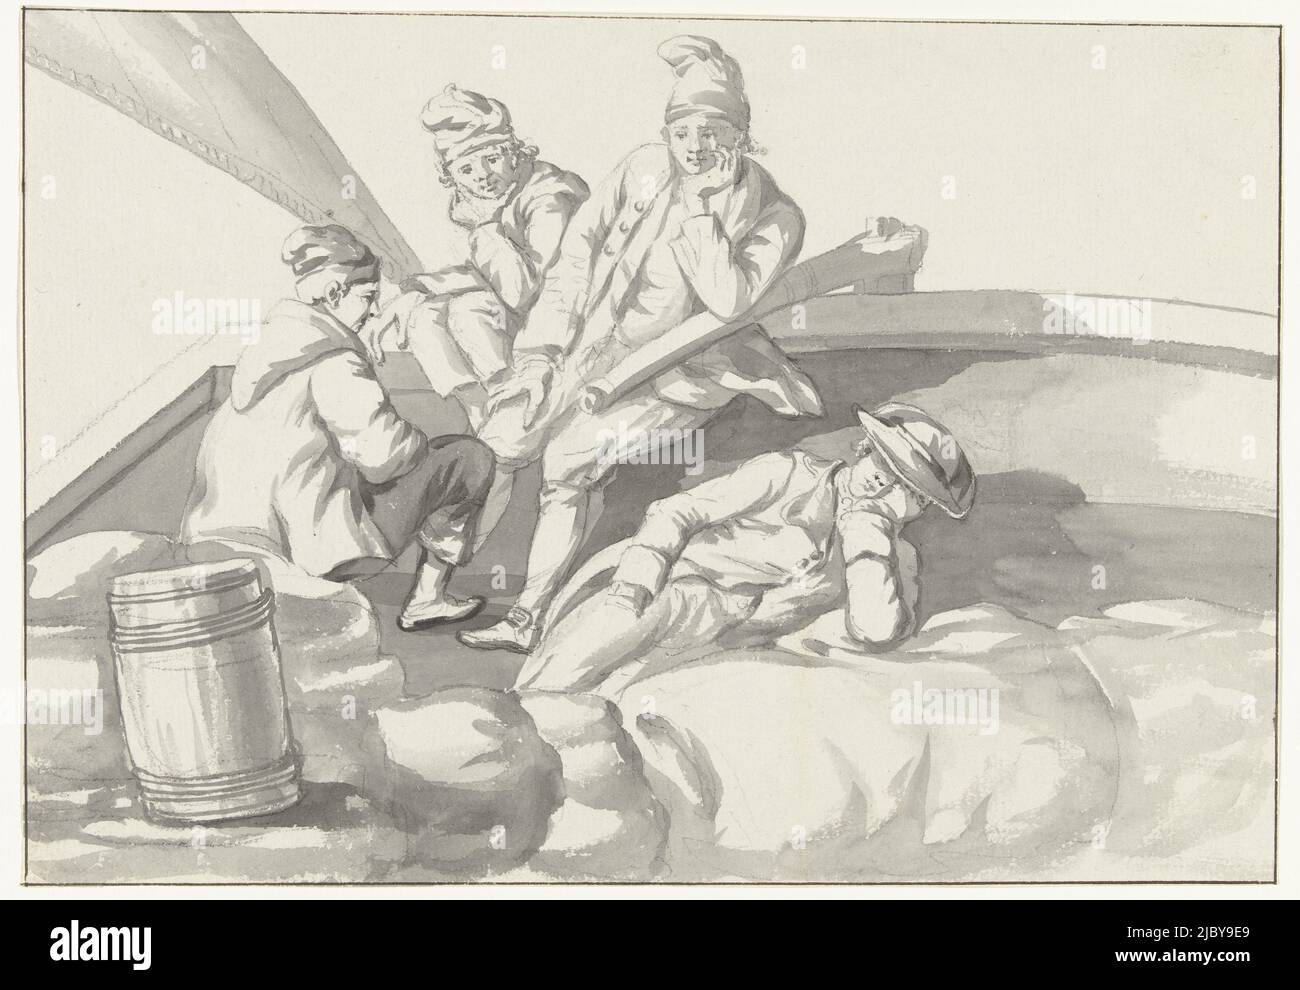 Sailors and crew on a boat, Louis Ducros, 1778, Drawing from the album 'Voyage en Italie, en Sicile et à Malte', 1778., draughtsman: Louis Ducros, 1778, paper, brush, h 182 mm × w 263 mm Stock Photo